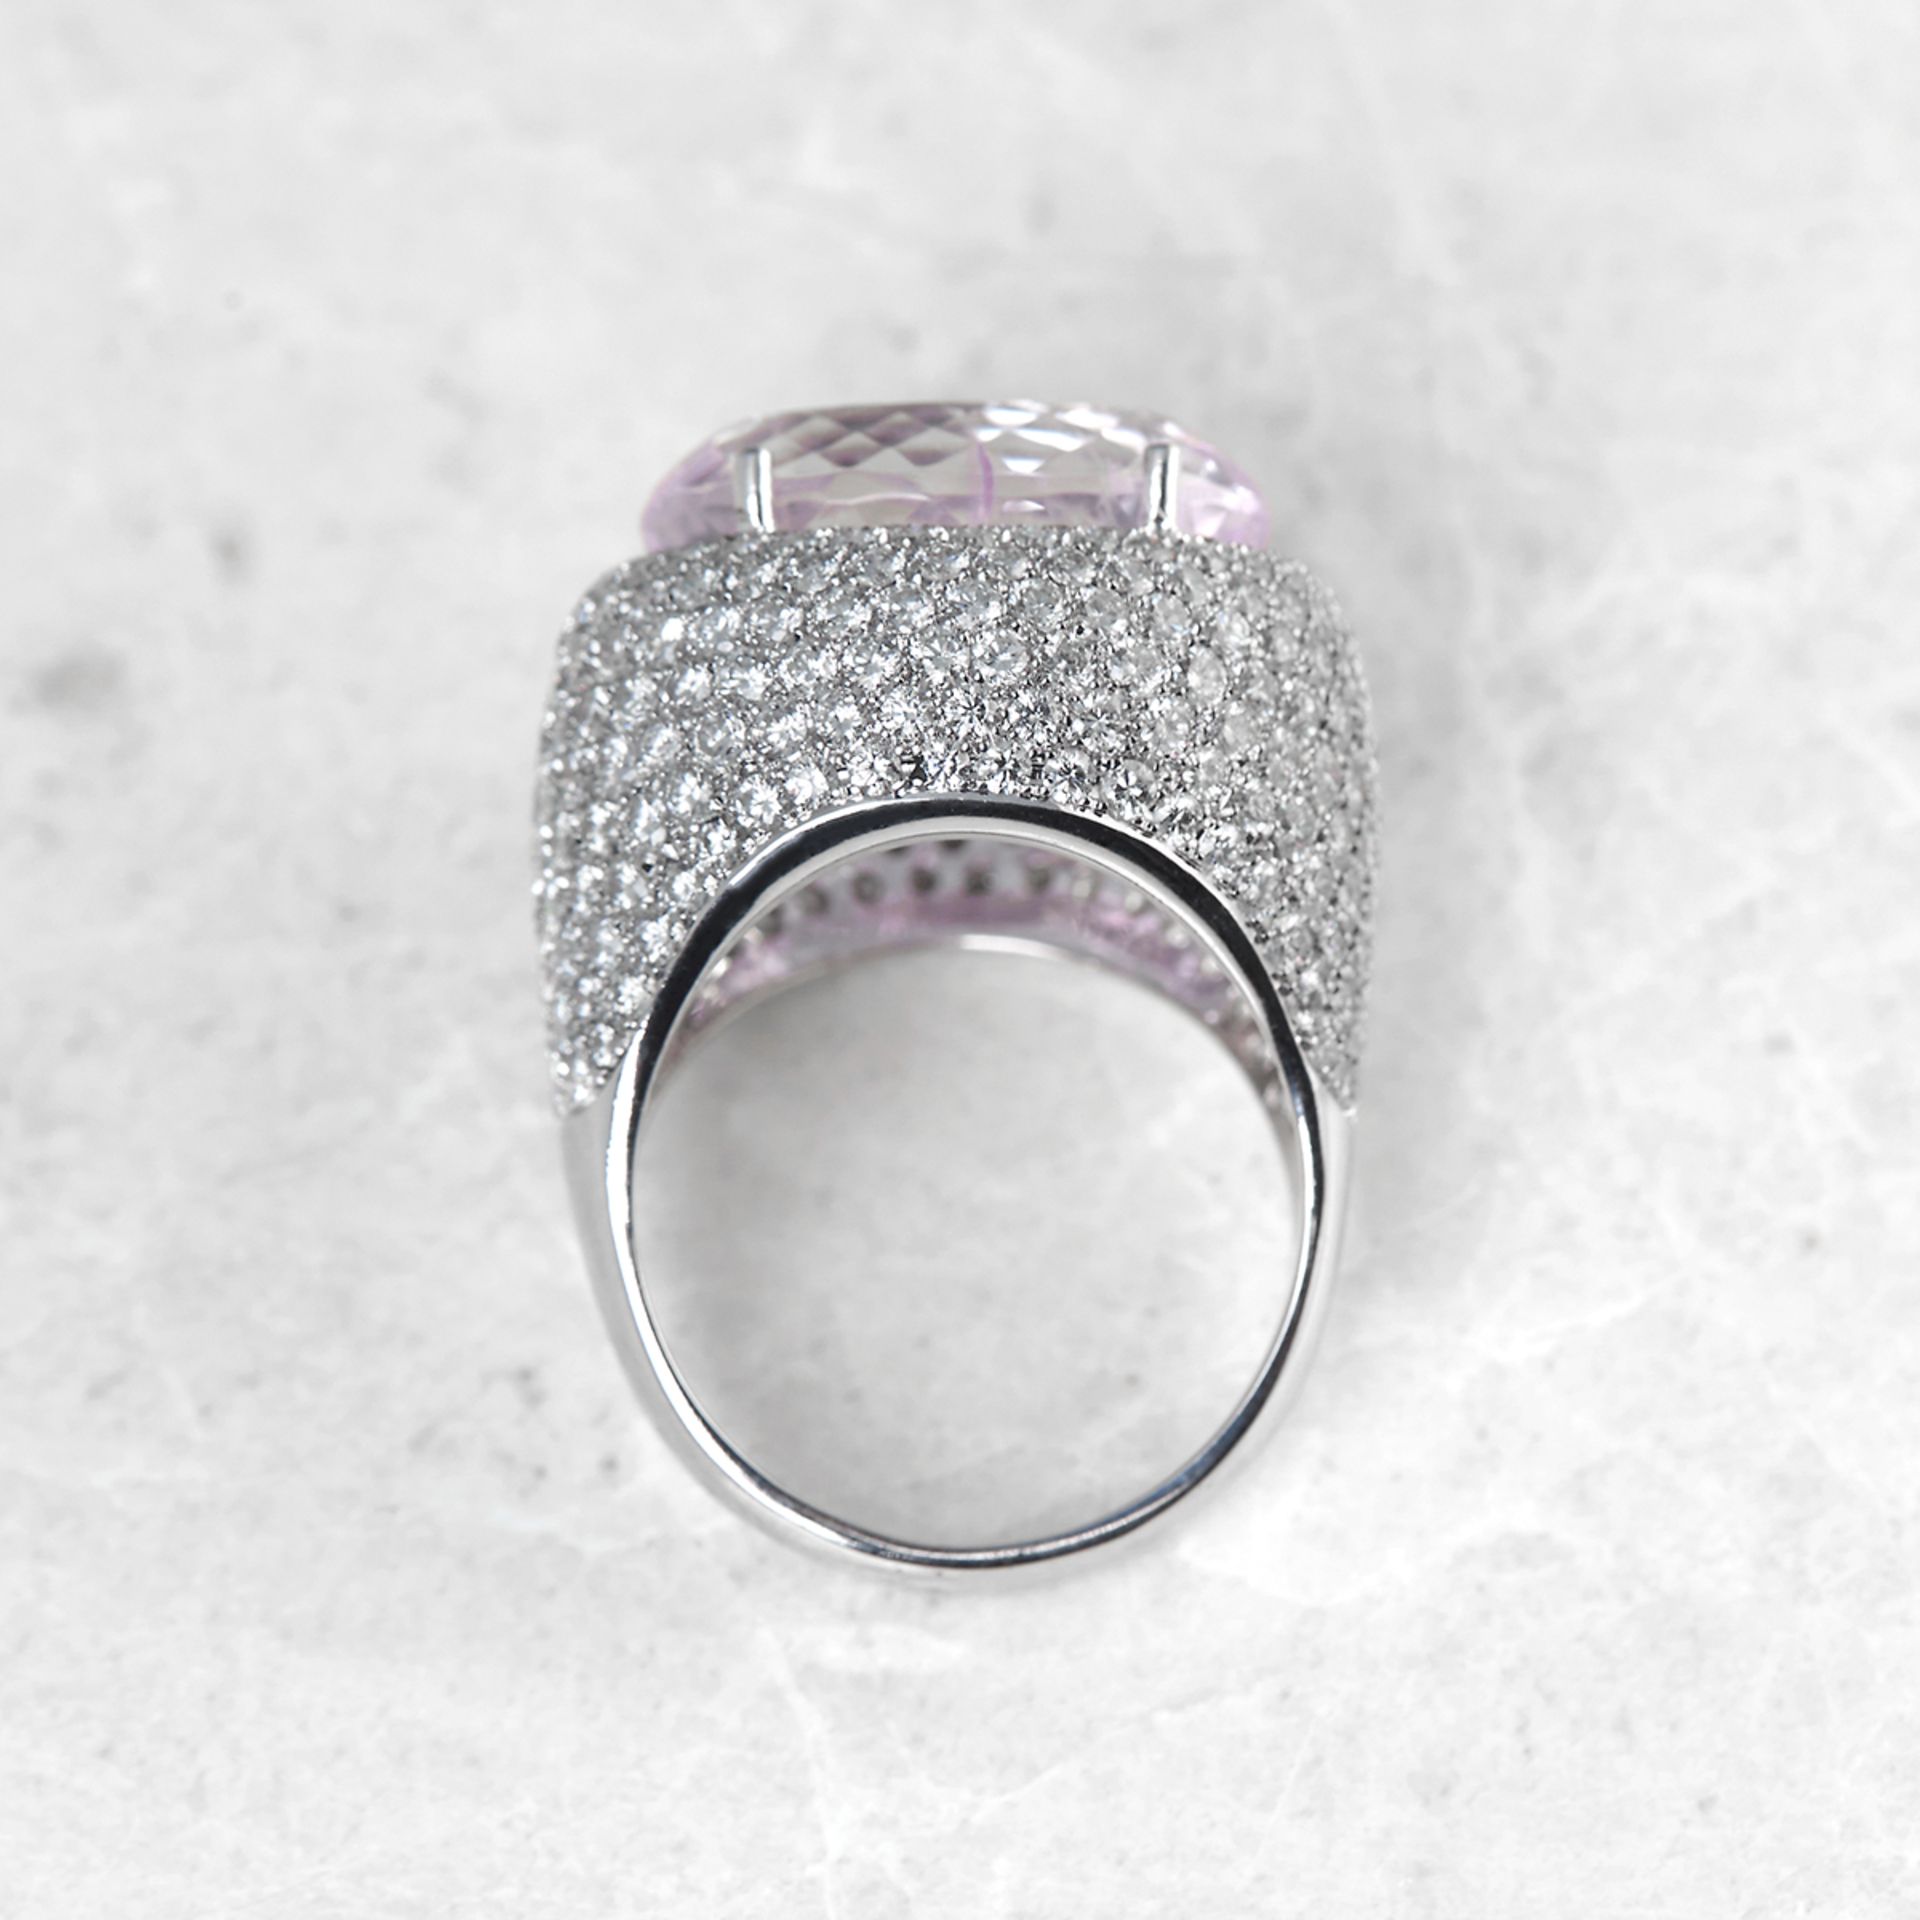 Unbranded 18k White Gold Kunzite & Diamond Ring - Image 5 of 5